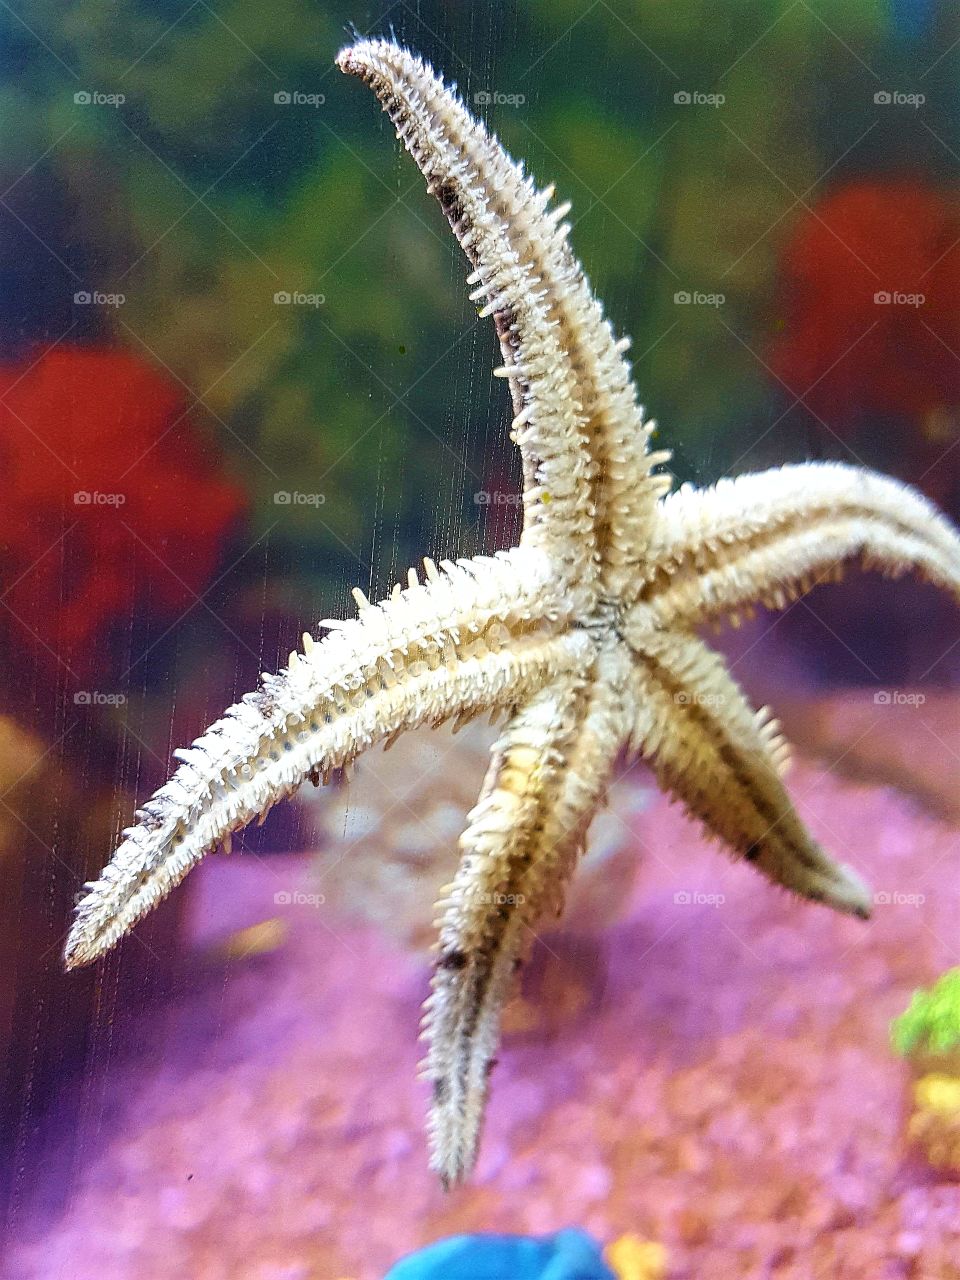 me star fish